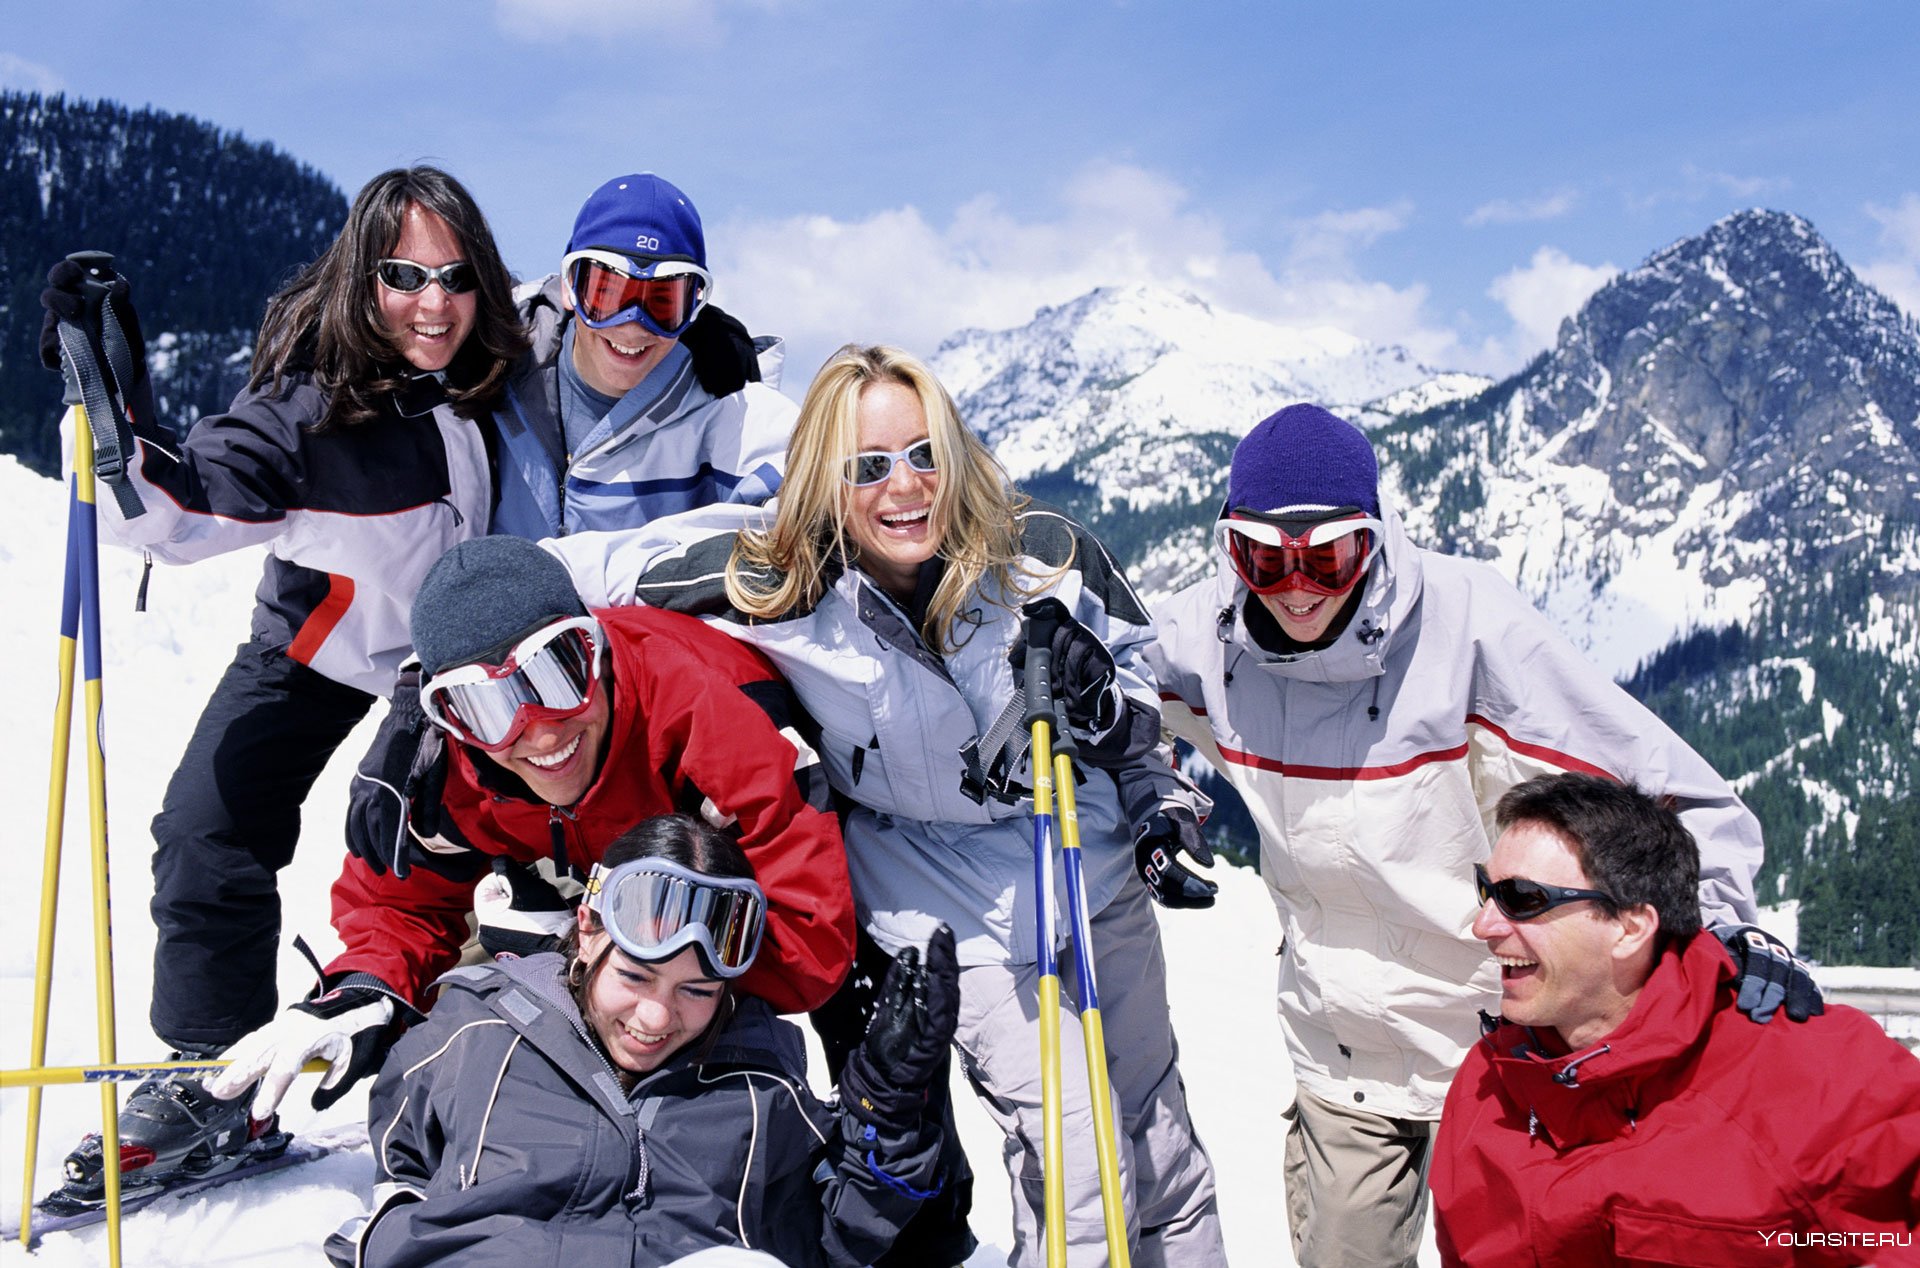 Покататься на горнолыжном курорте. Люди на горнолыжном курорте. Люди на лыжах в горах. Горнолыжный туризм. Катание на горных лыжах.